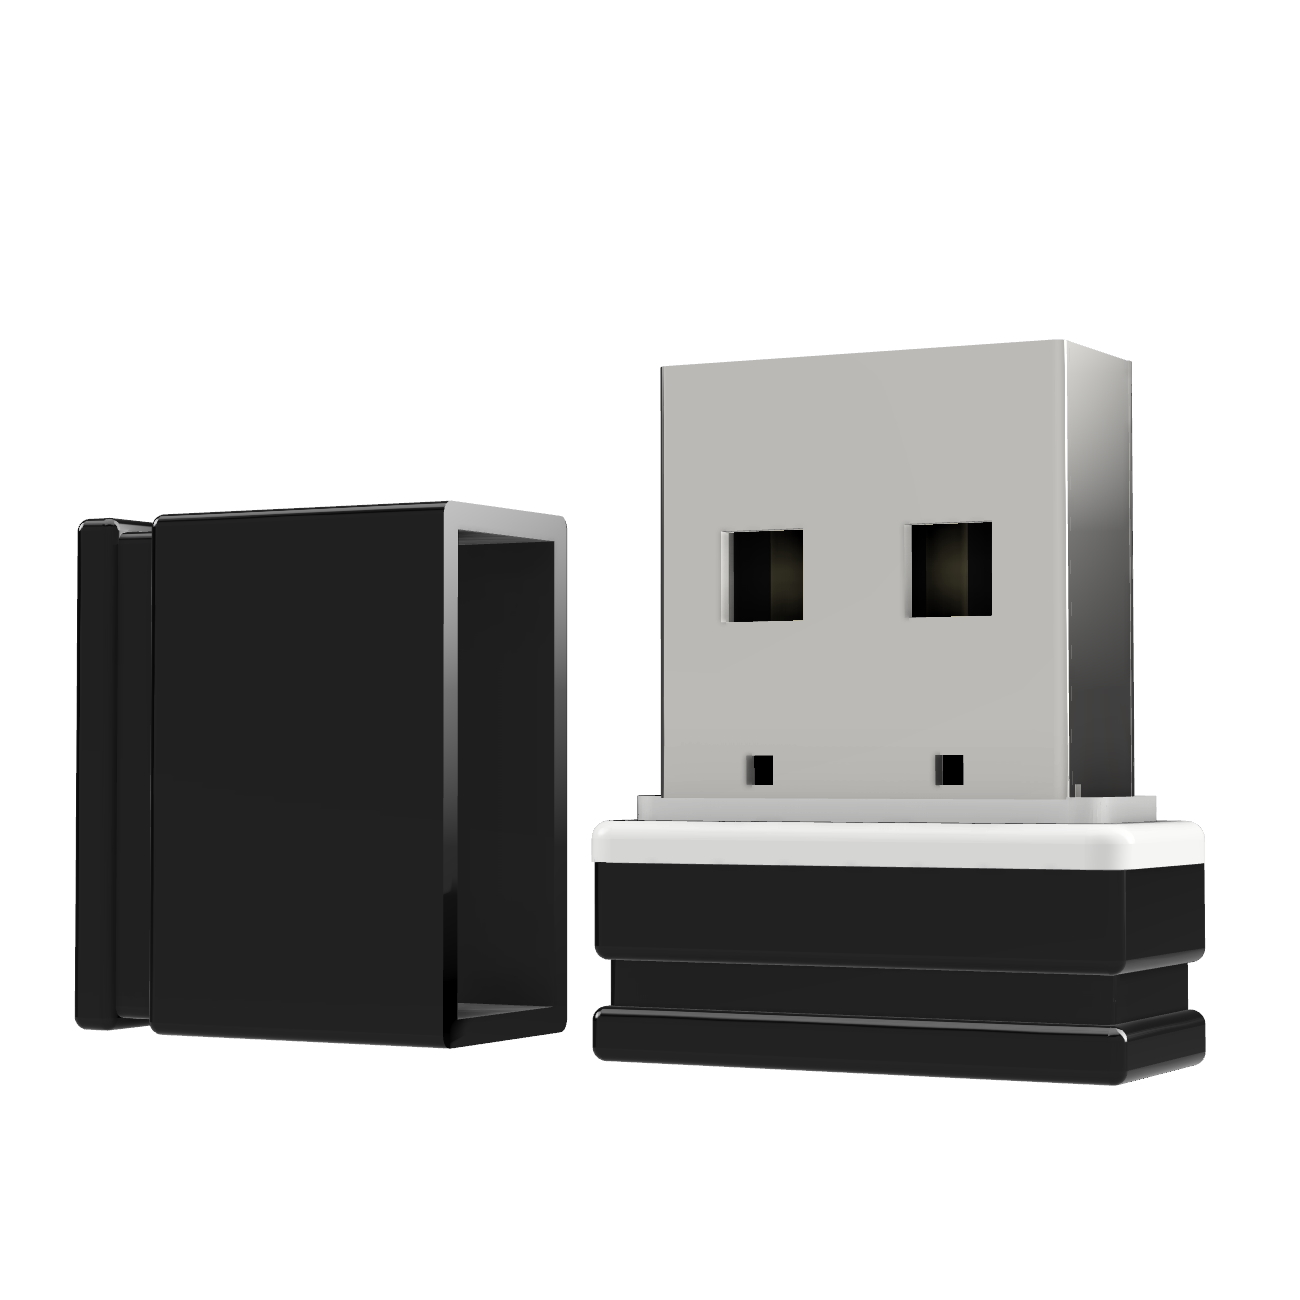 USB GERMANY ®ULTRA P1 USB-Stick Mini GB) 32 (Schwarz/Weiss